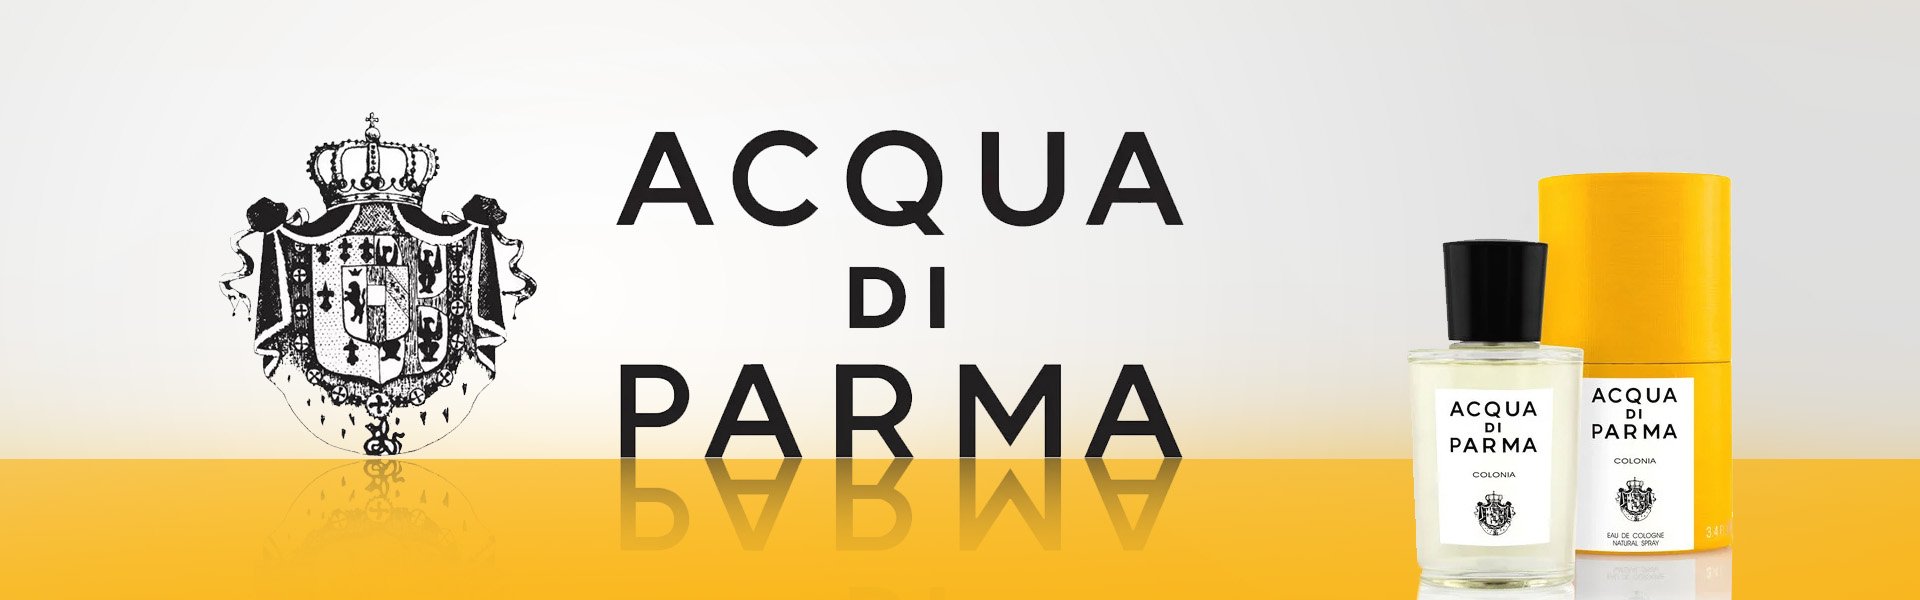 <p>Позвольте <strong>100% оригинальным Парфюмерия унисекс Blu Mediterraneo Fico Di Amalfi Acqua Di Parma EDT</strong> удивить вас и создайте женственный образ, используя эти эксклюзивные <strong>женские духи </strong>с уникальным, индивидуальным ароматом. Откройте для себя <strong>100% оригинальные продукты Acqua Di Parma</strong>!</p><br /><ul><li>Пол: Унисекс</li><li>Тип: EDT (Eau de Toilette)</li><li>Название аромата: Blu Mediterraneo Fico Di Amalfi</li></ul> 